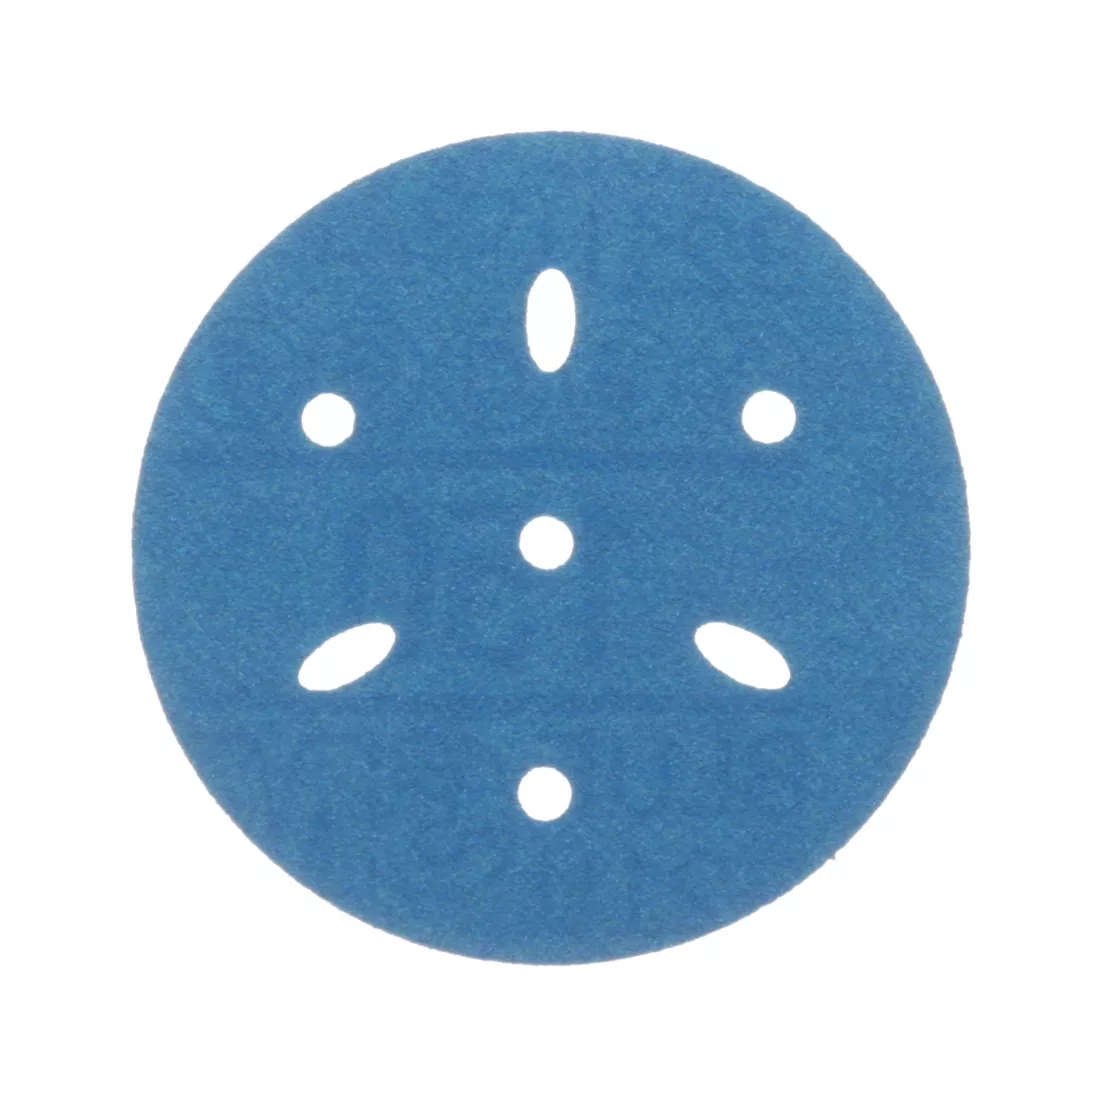 3M™ Hookit™ Blue Abrasive Disc Multi-hole, 36145, 3 in, 150 grade, 50
discs per carton, 4 cartons per case